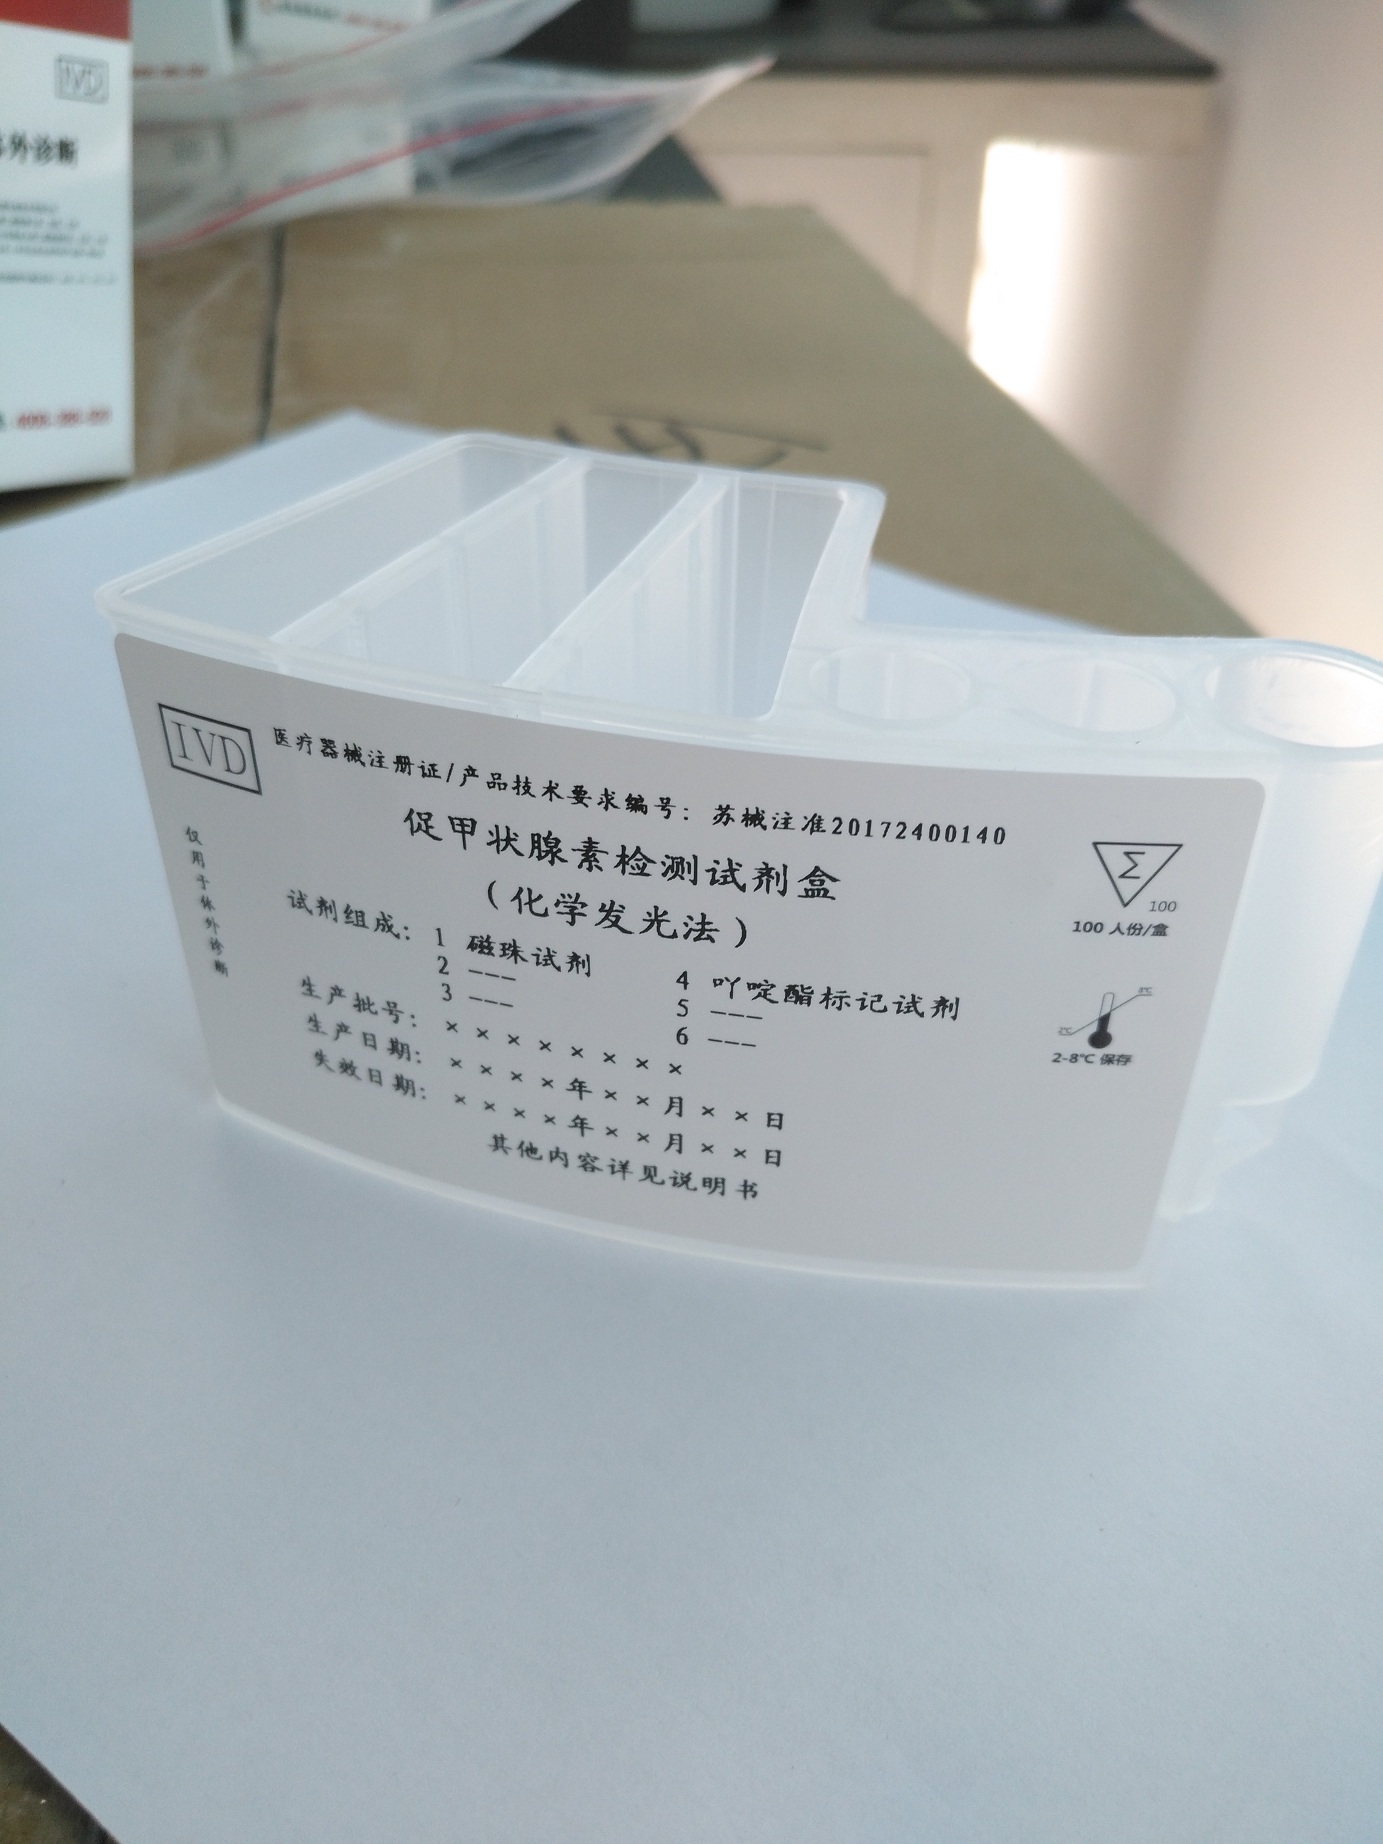 【诺尔曼】促甲状腺素检测试剂盒（化学发光法）-云医购